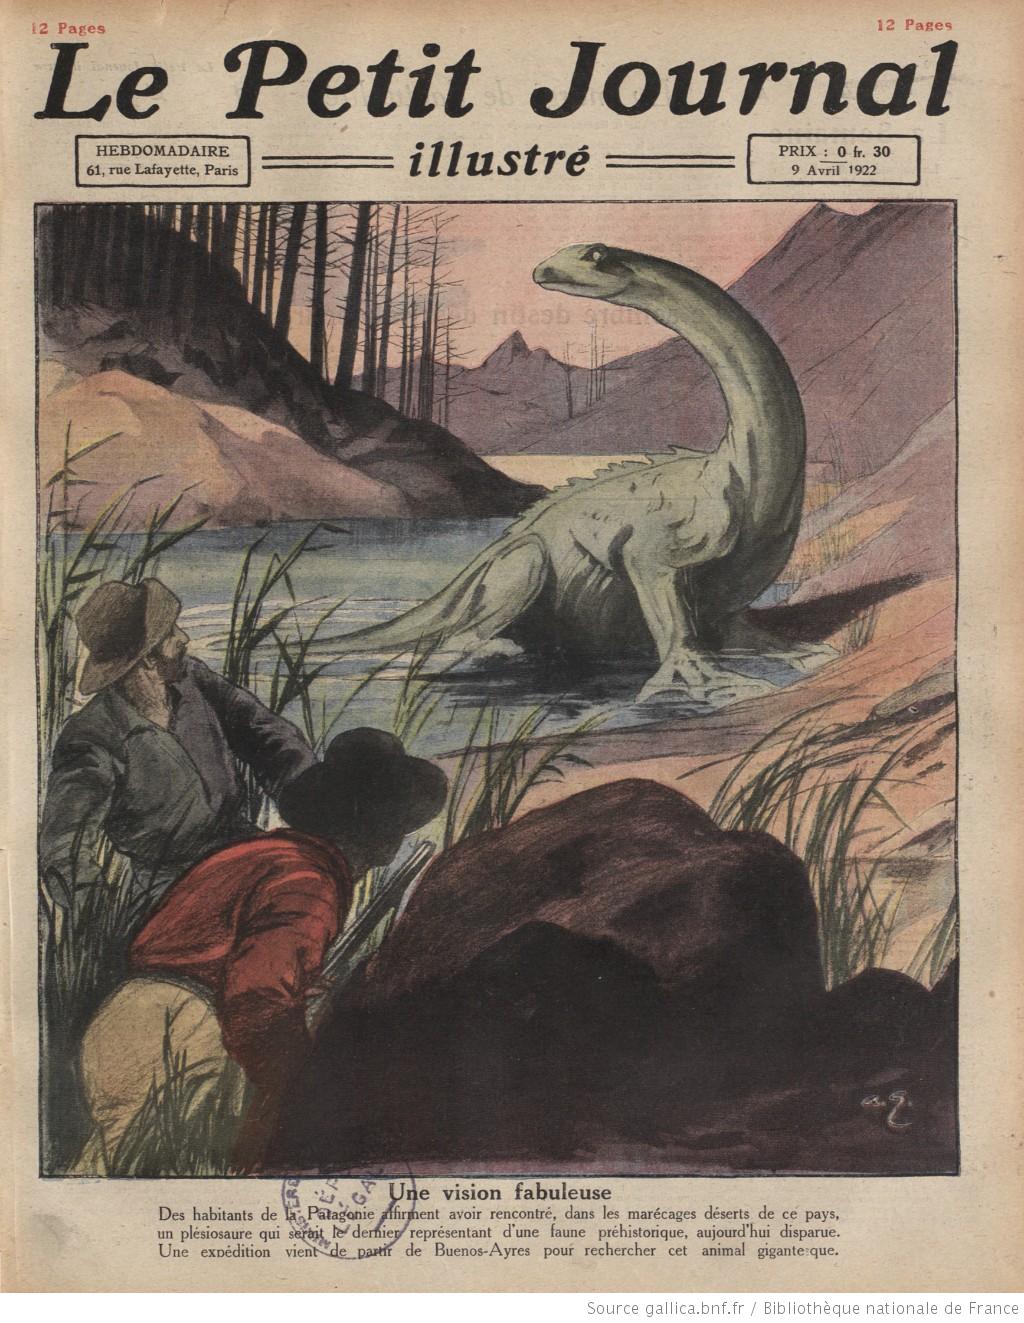 Couverture du Petit Journal Illustré le mardi 9 avril, relatant la découverte d'un            "plésiosaure" dans des marécages de Patagonie